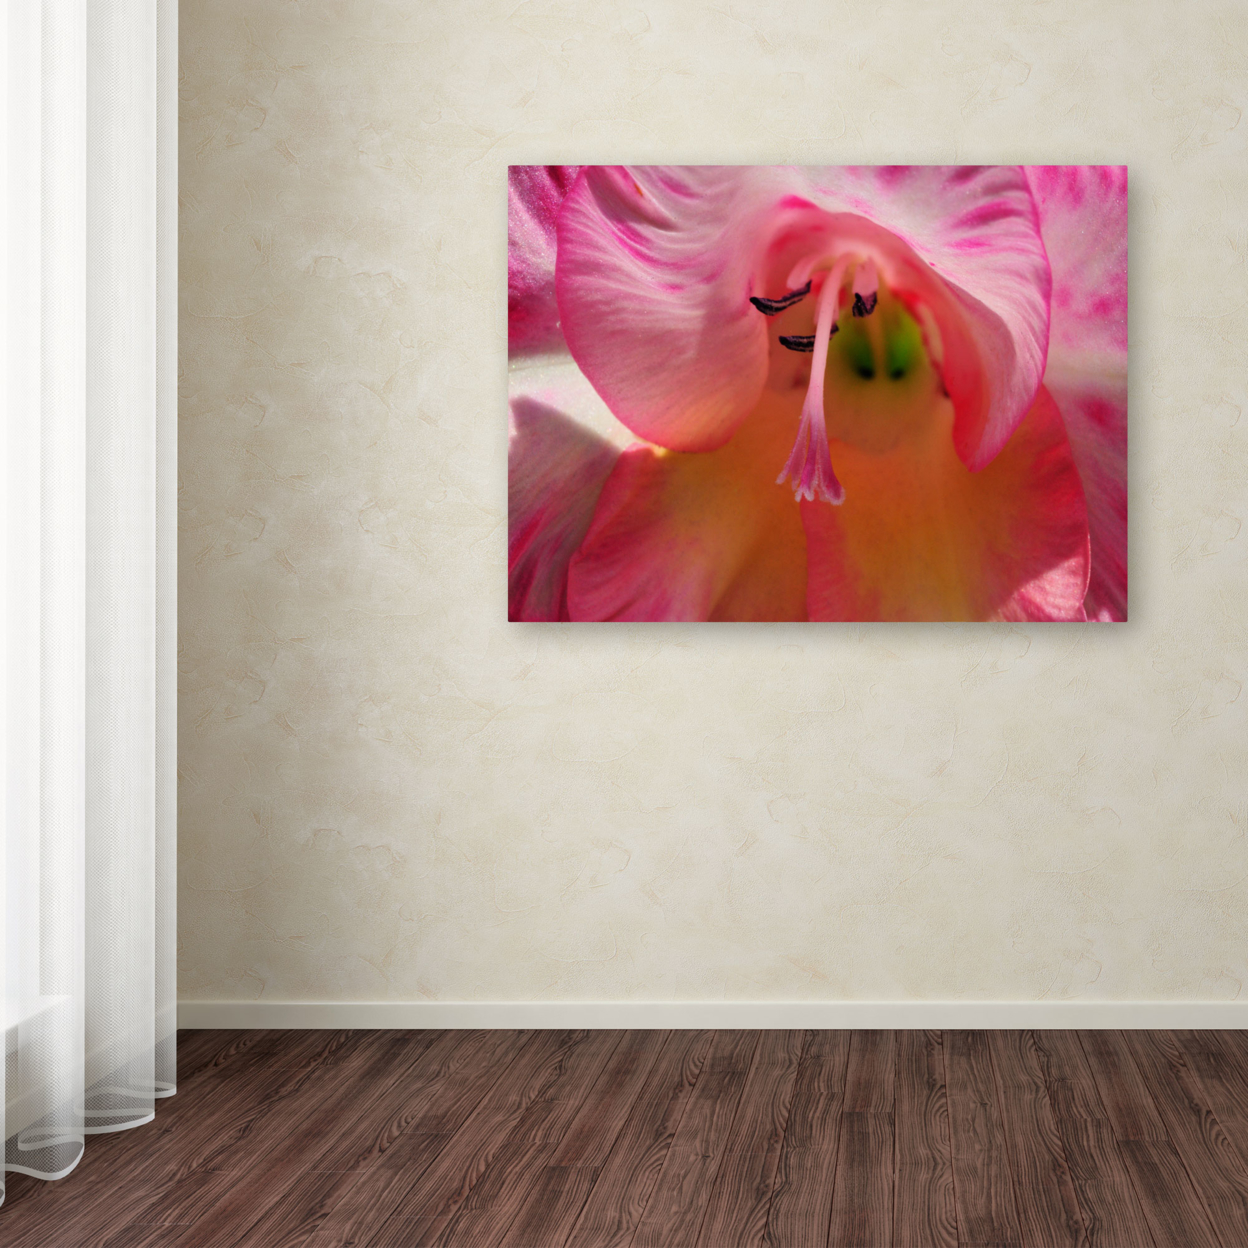 Kurt Shaffer 'Inside A Lily' Canvas Art 16 X 24